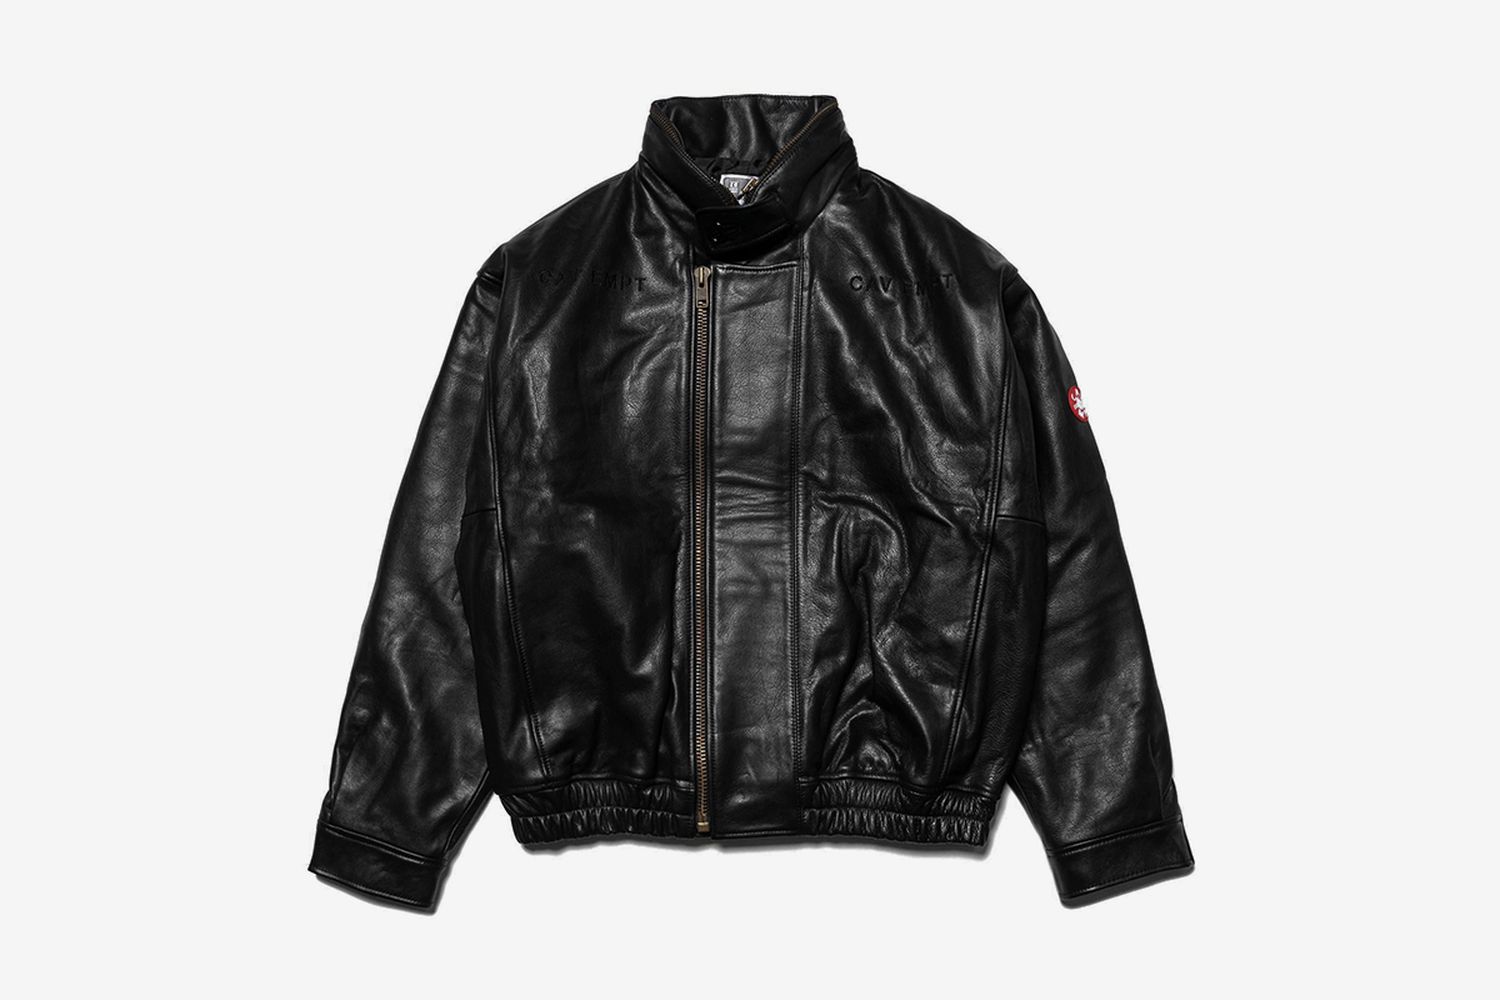 C.R Leather Jacket